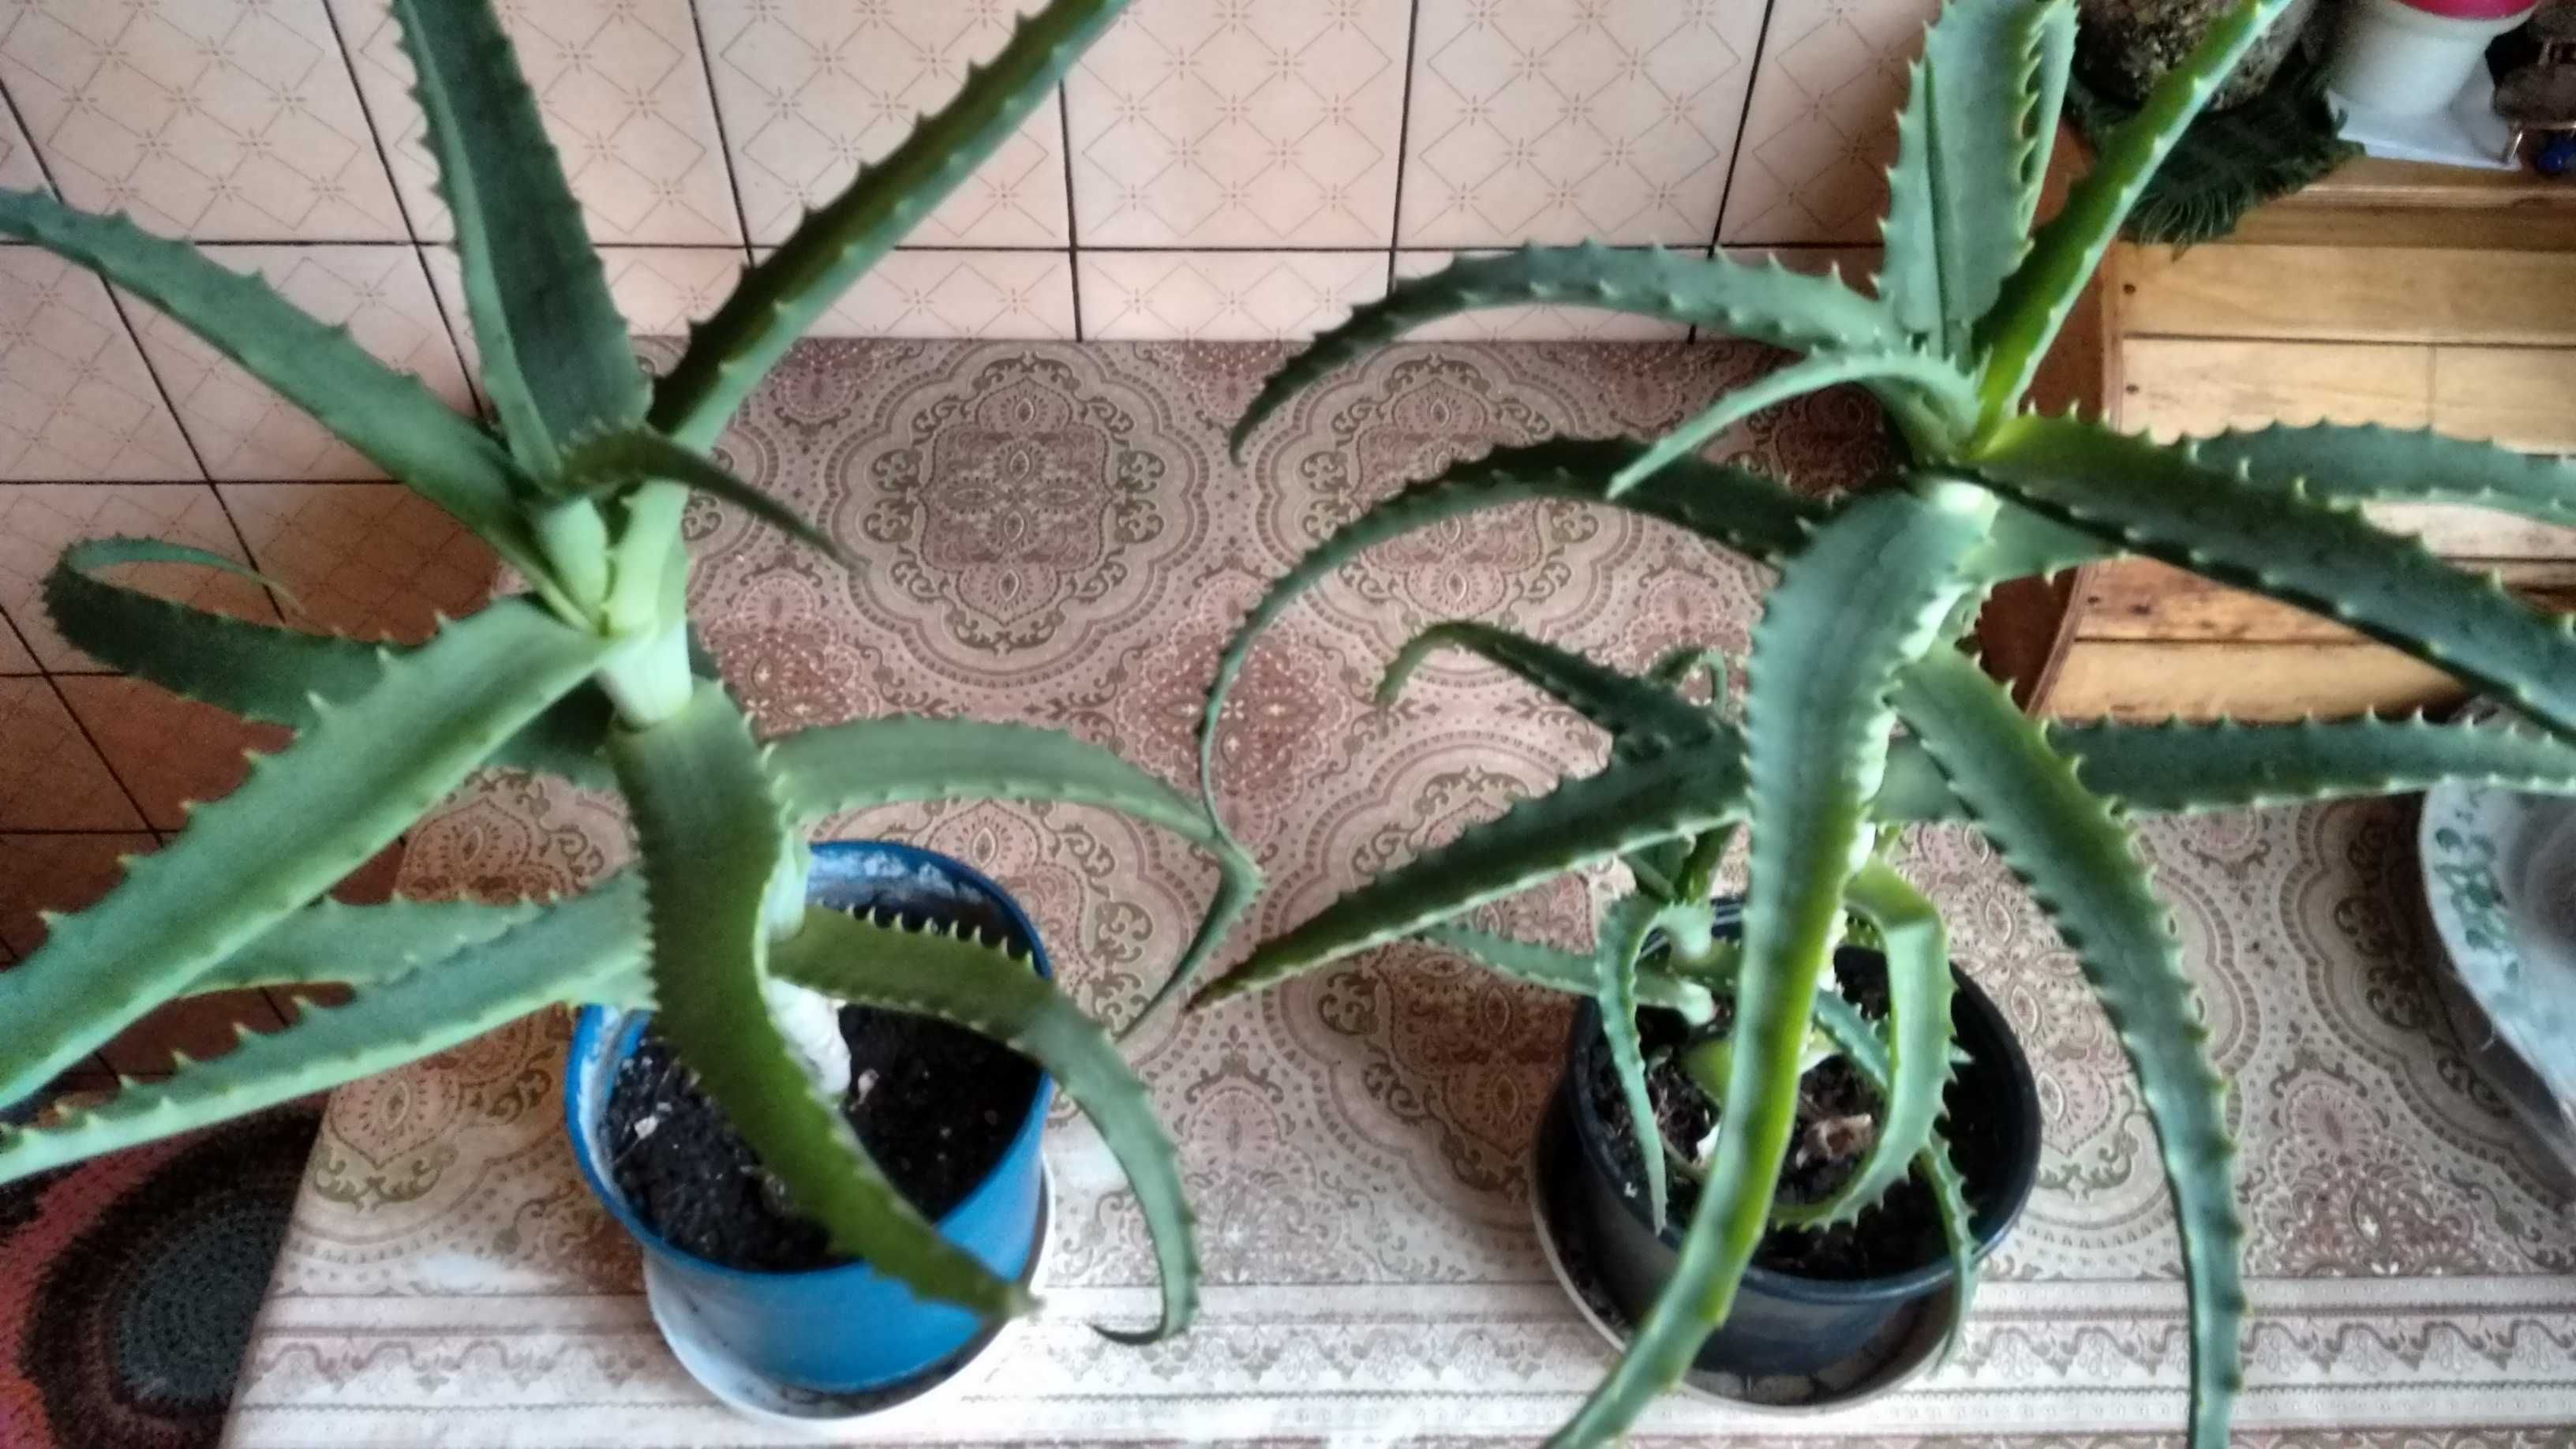 Aloes leczniczy-duże rośliny czteroletnie